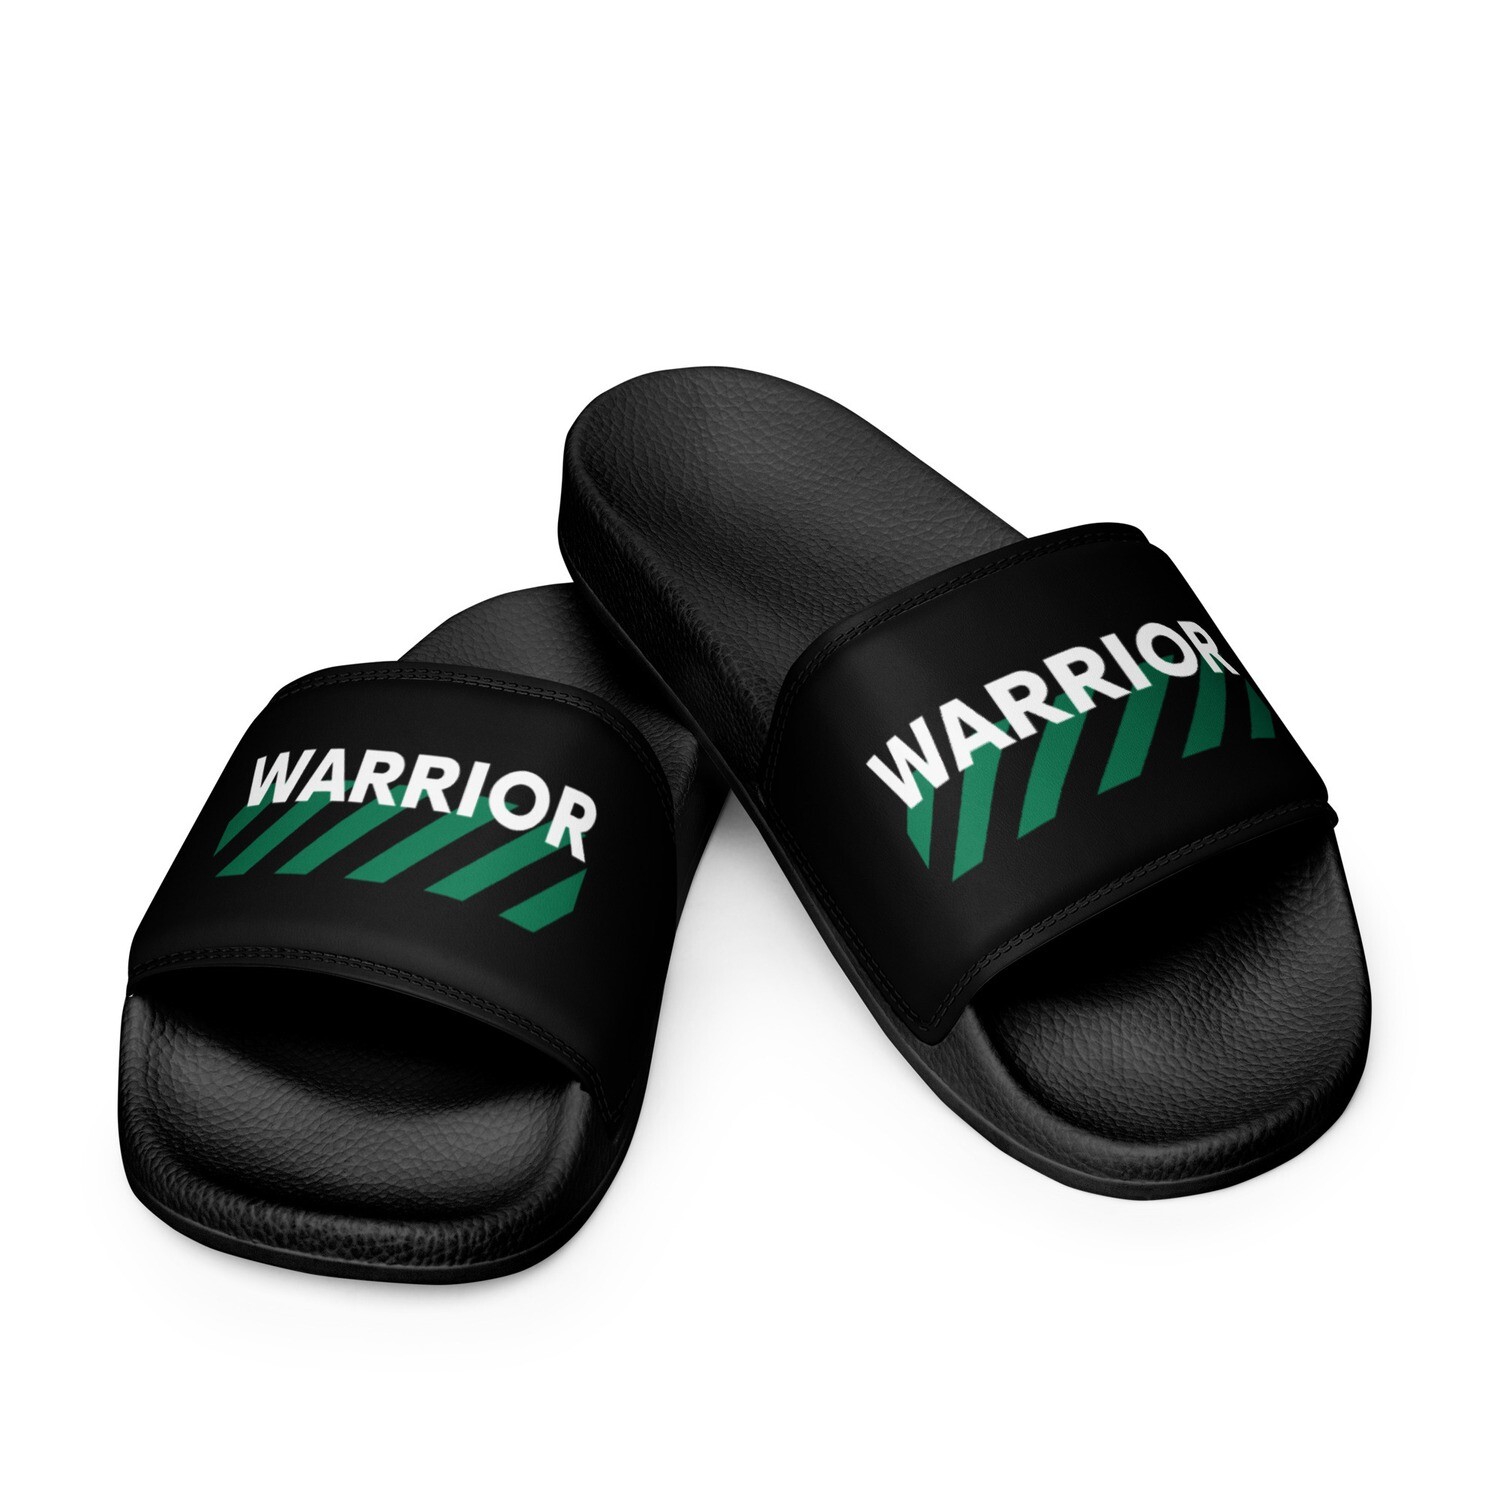 Warrior Slides (women sizes)